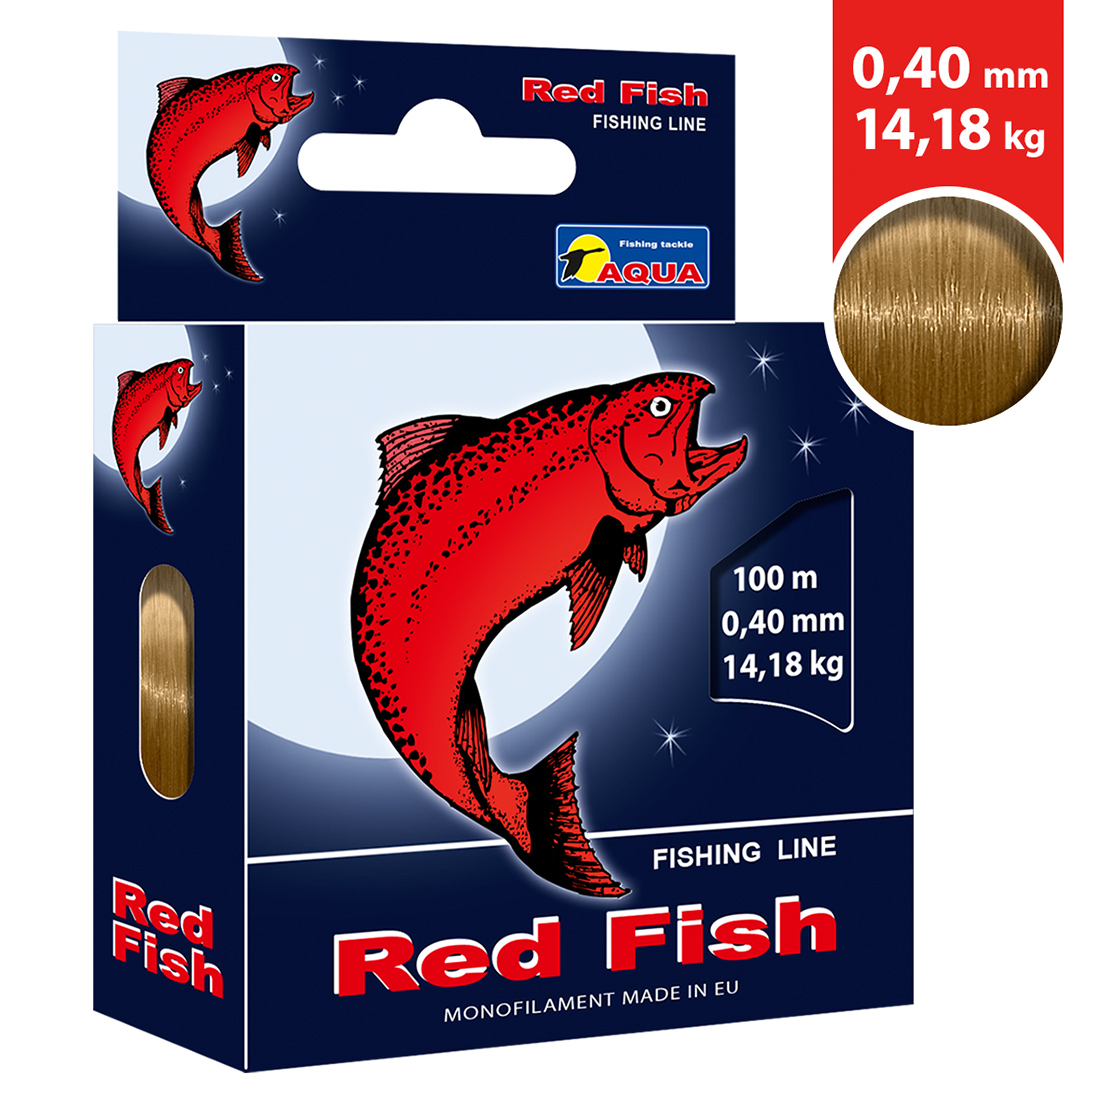 Леска AQUA Red Fish 0,40mm 100m, цвет - серо-коричневый, test - 14,18kg